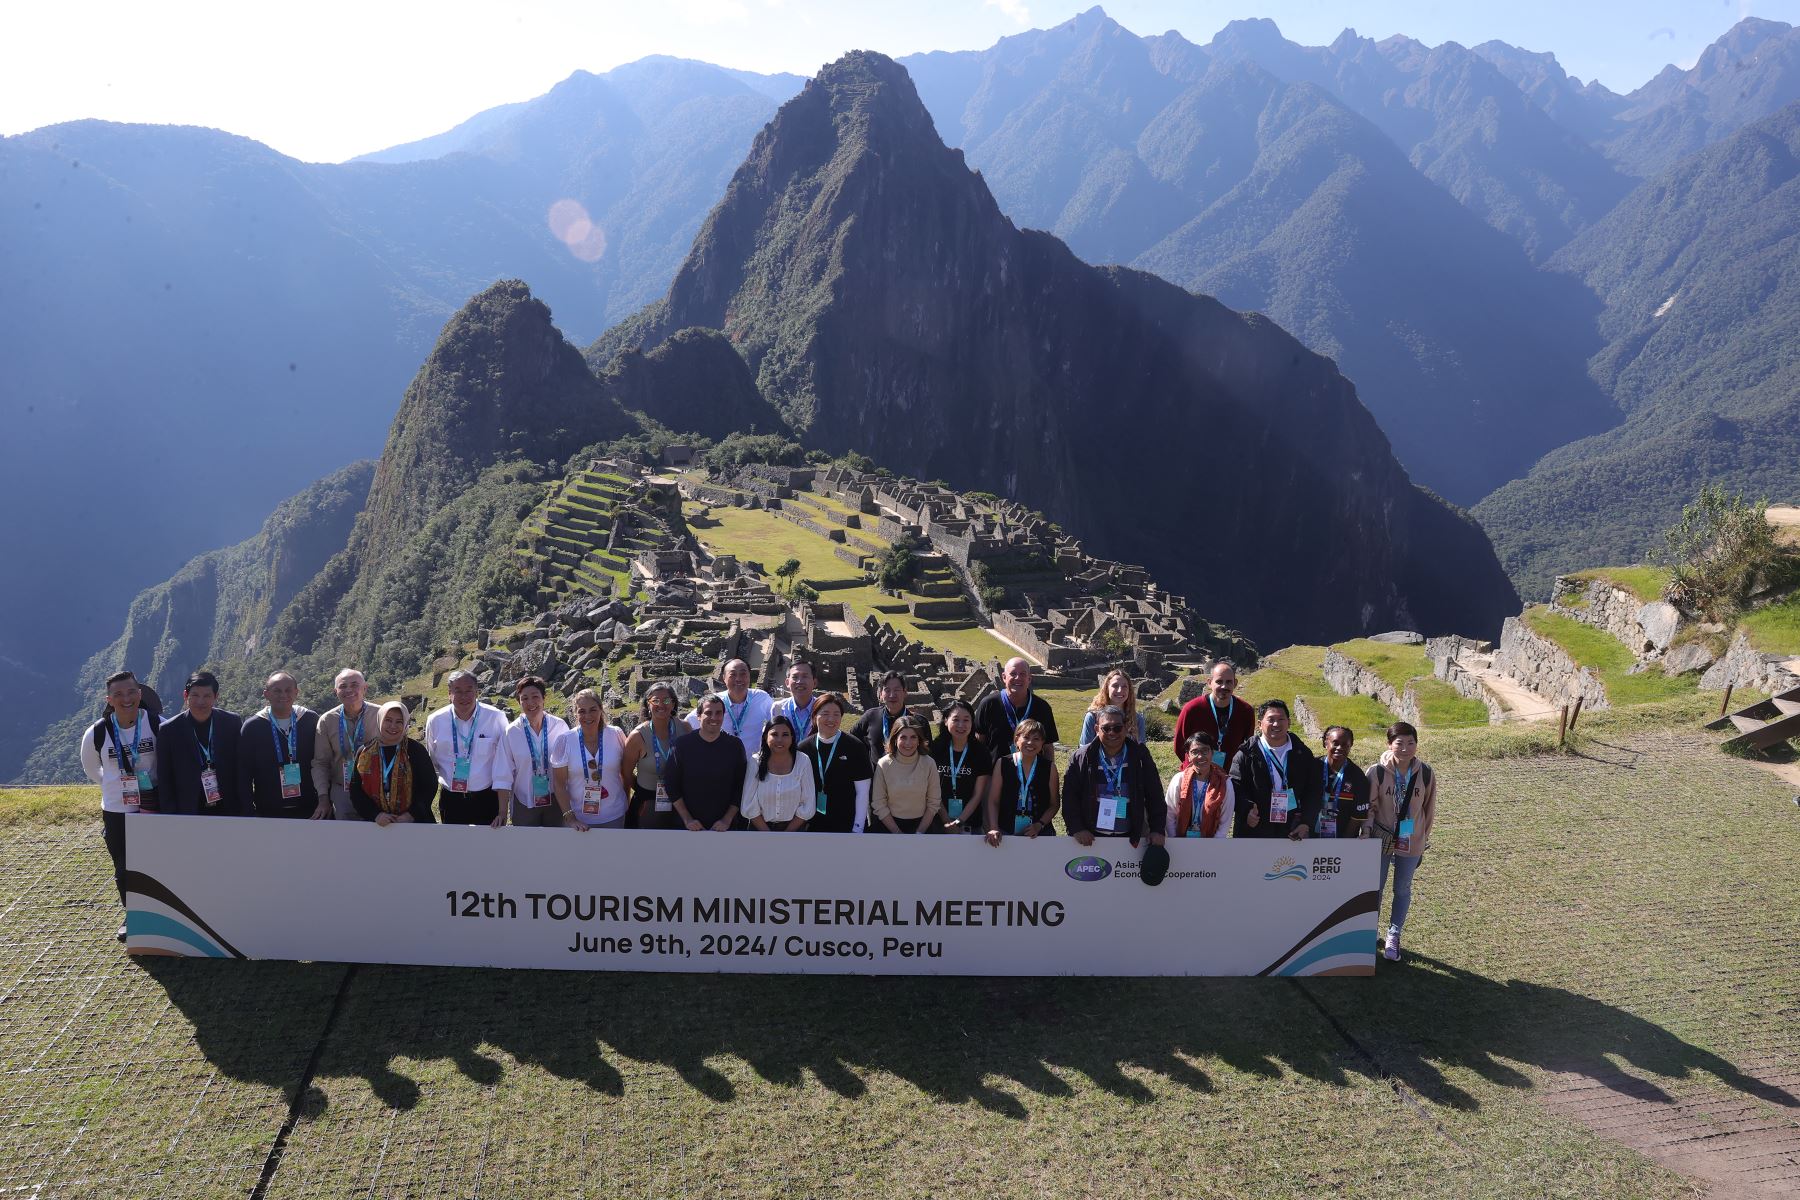 APEC Peru 2024 Machu Picchu bloc's ministers and high tourism